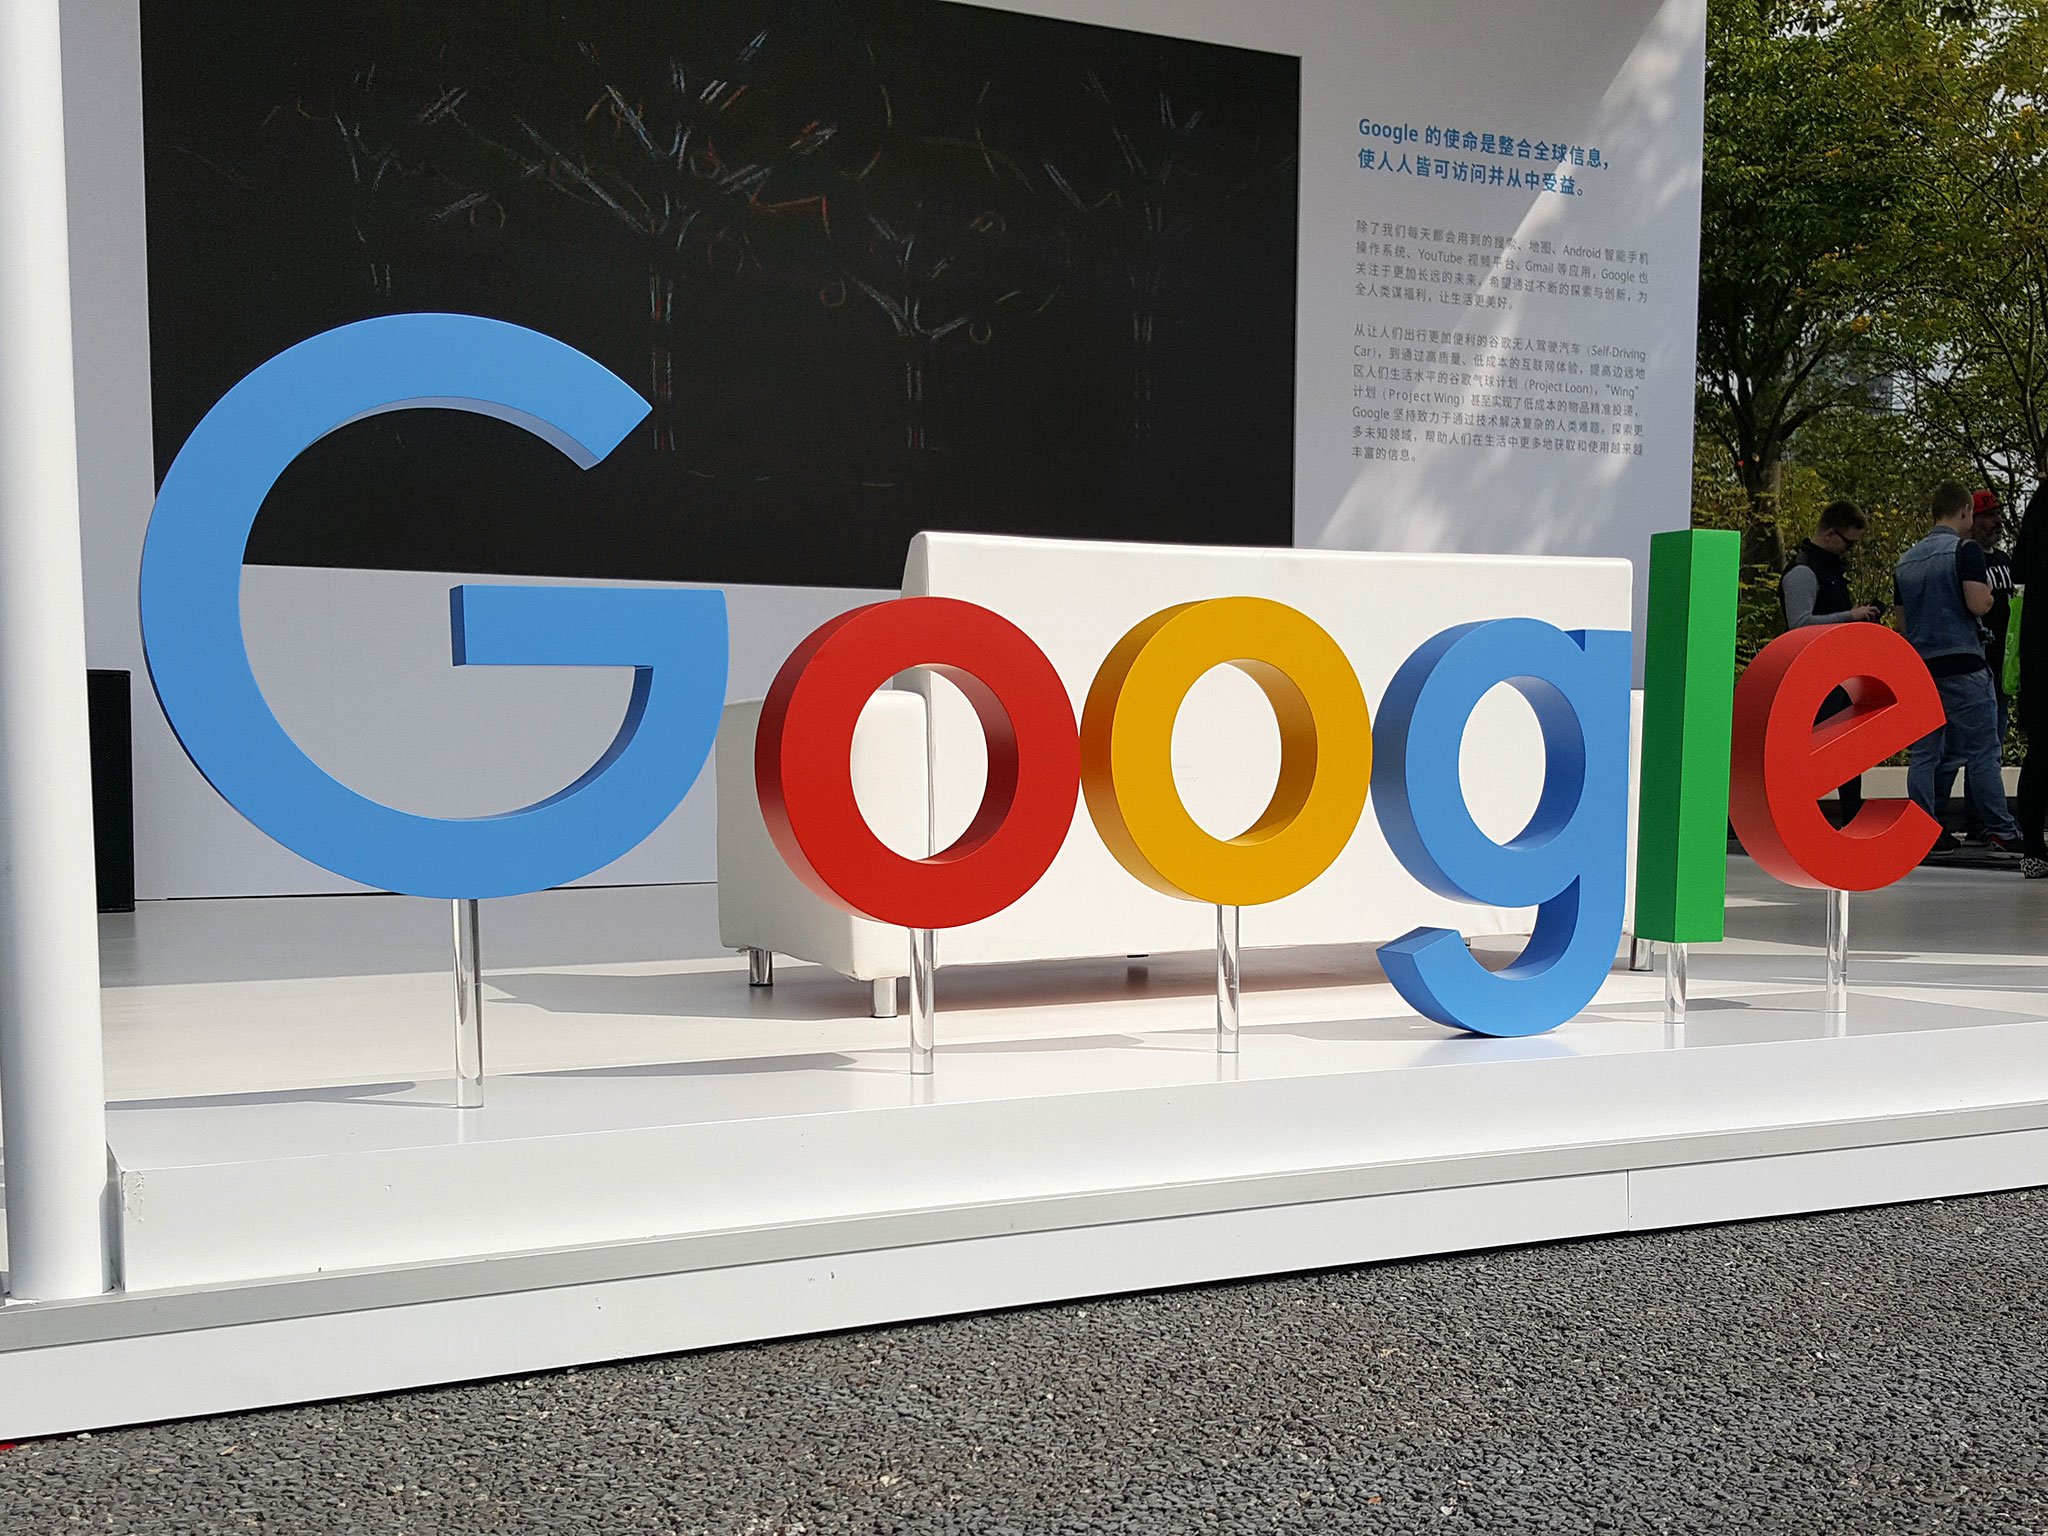 سيؤدي تصميم Google لمعالجات الهاتف الخاصة بها إلى تغيير الصناعة تمامًا نحو الأفضل 219